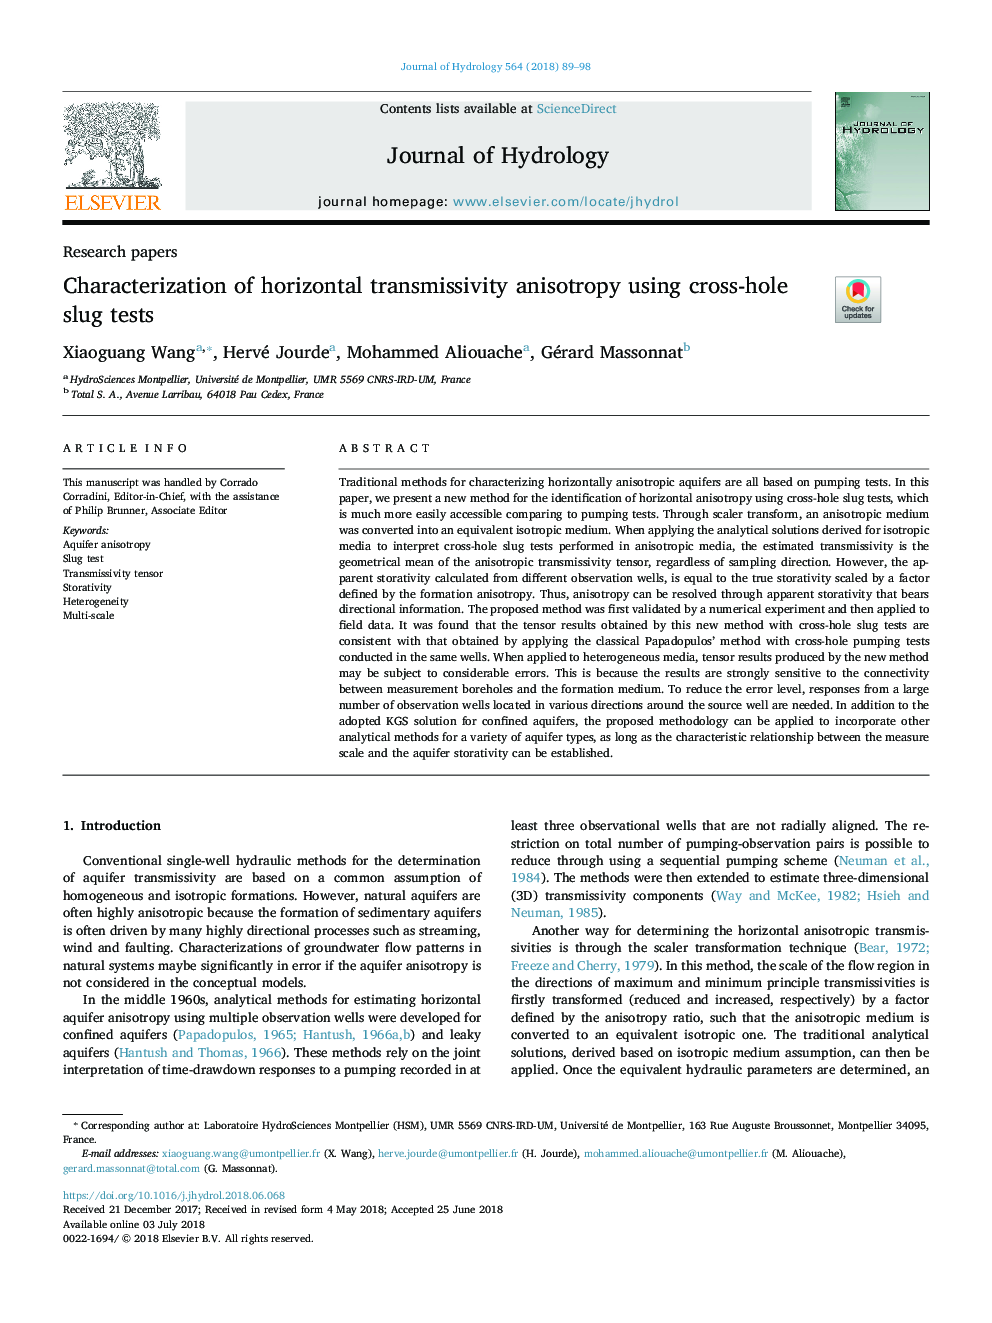 Characterization of horizontal transmissivity anisotropy using cross-hole slug tests